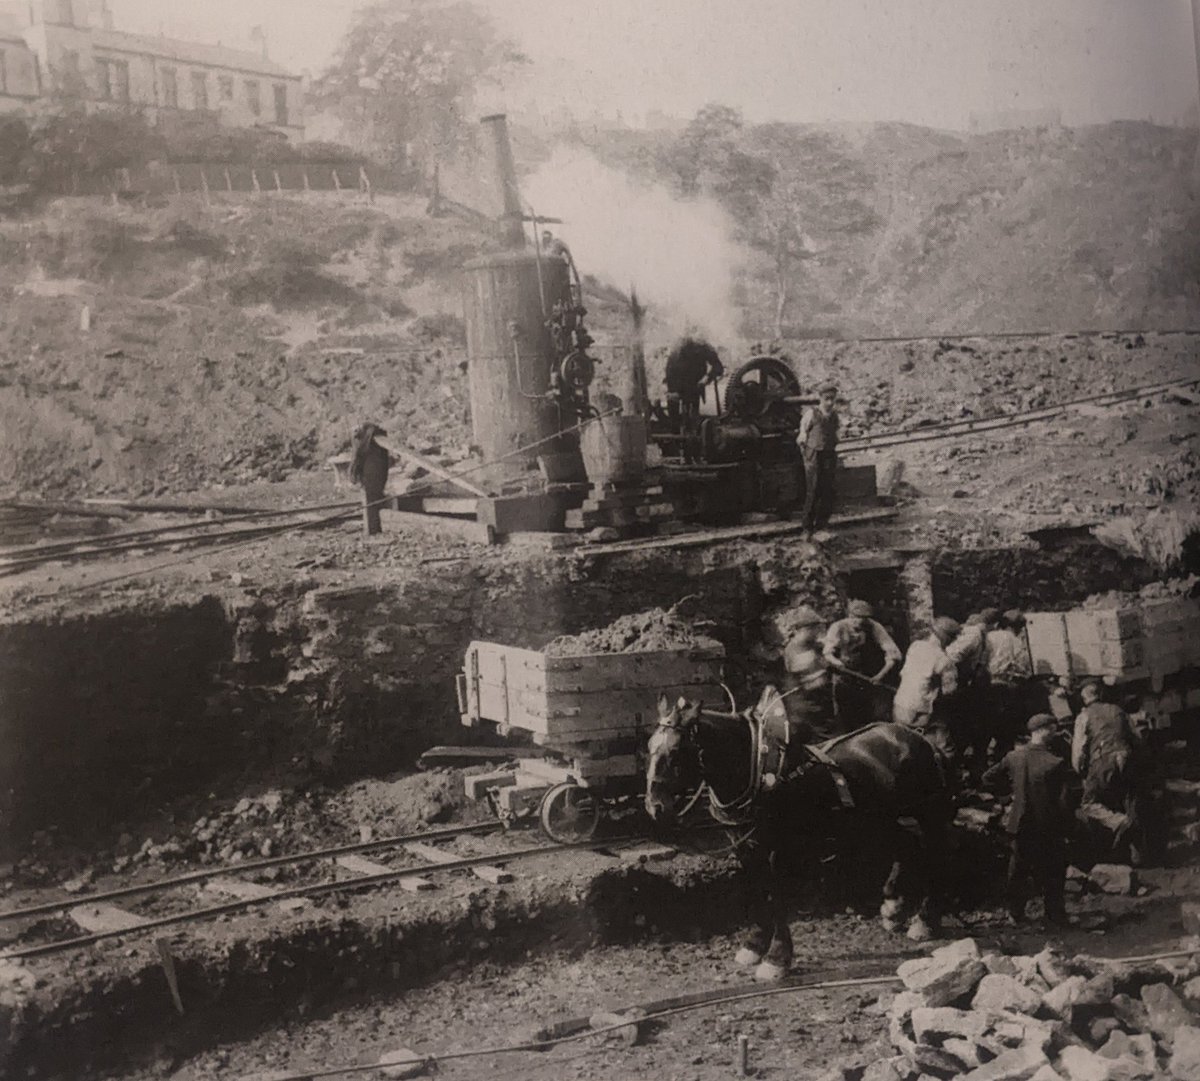 Construction of Ouseburn culvert, 1906-1907 using horsepower